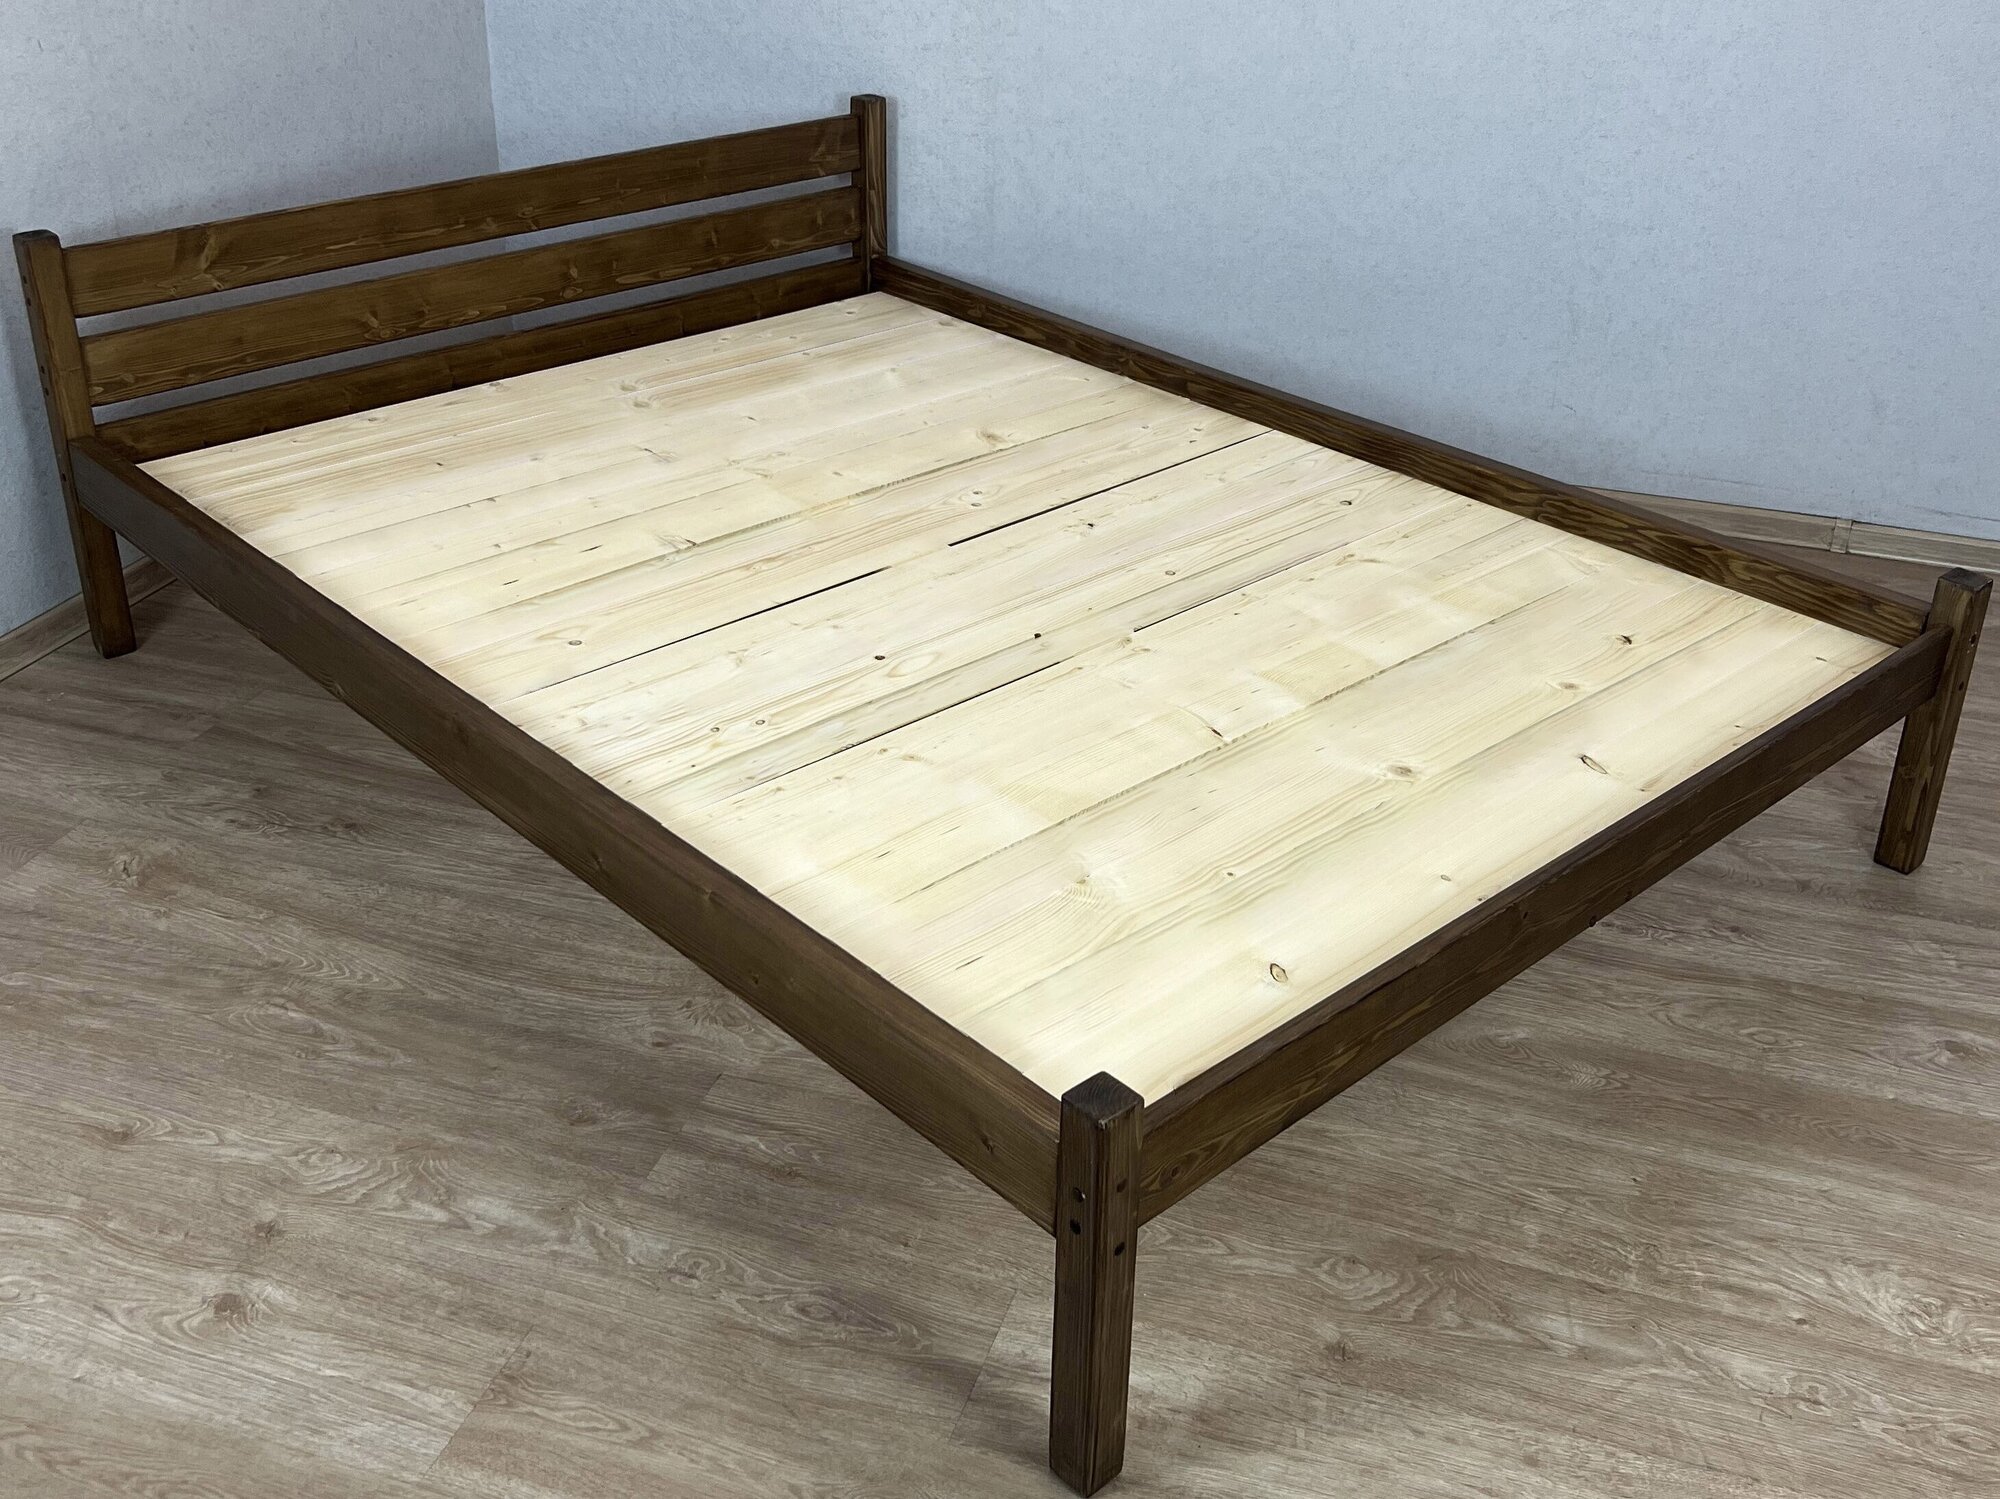 Кровать двуспальная Классика из массива сосны со сплошным основанием, 200х150 см (габариты 210х160), цвет темный дуб